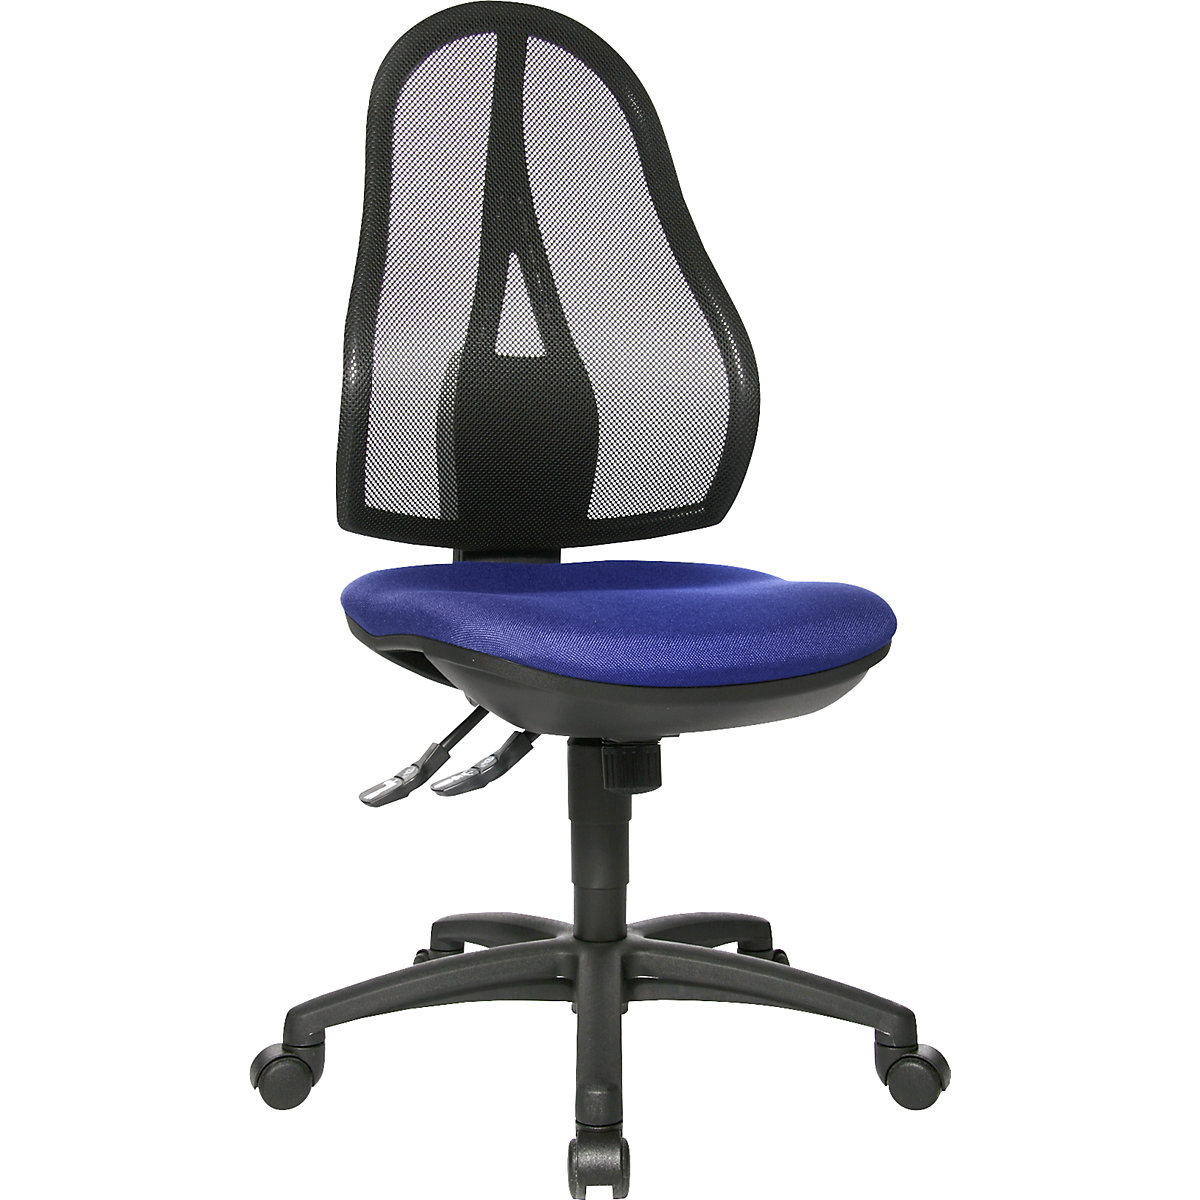 Uredska okretna stolica OPEN POINT SY – Topstar, bez naslona za ruke, mrežasti naslon za leđa u crnoj boji, presvlaka u royal plavoj boji-7